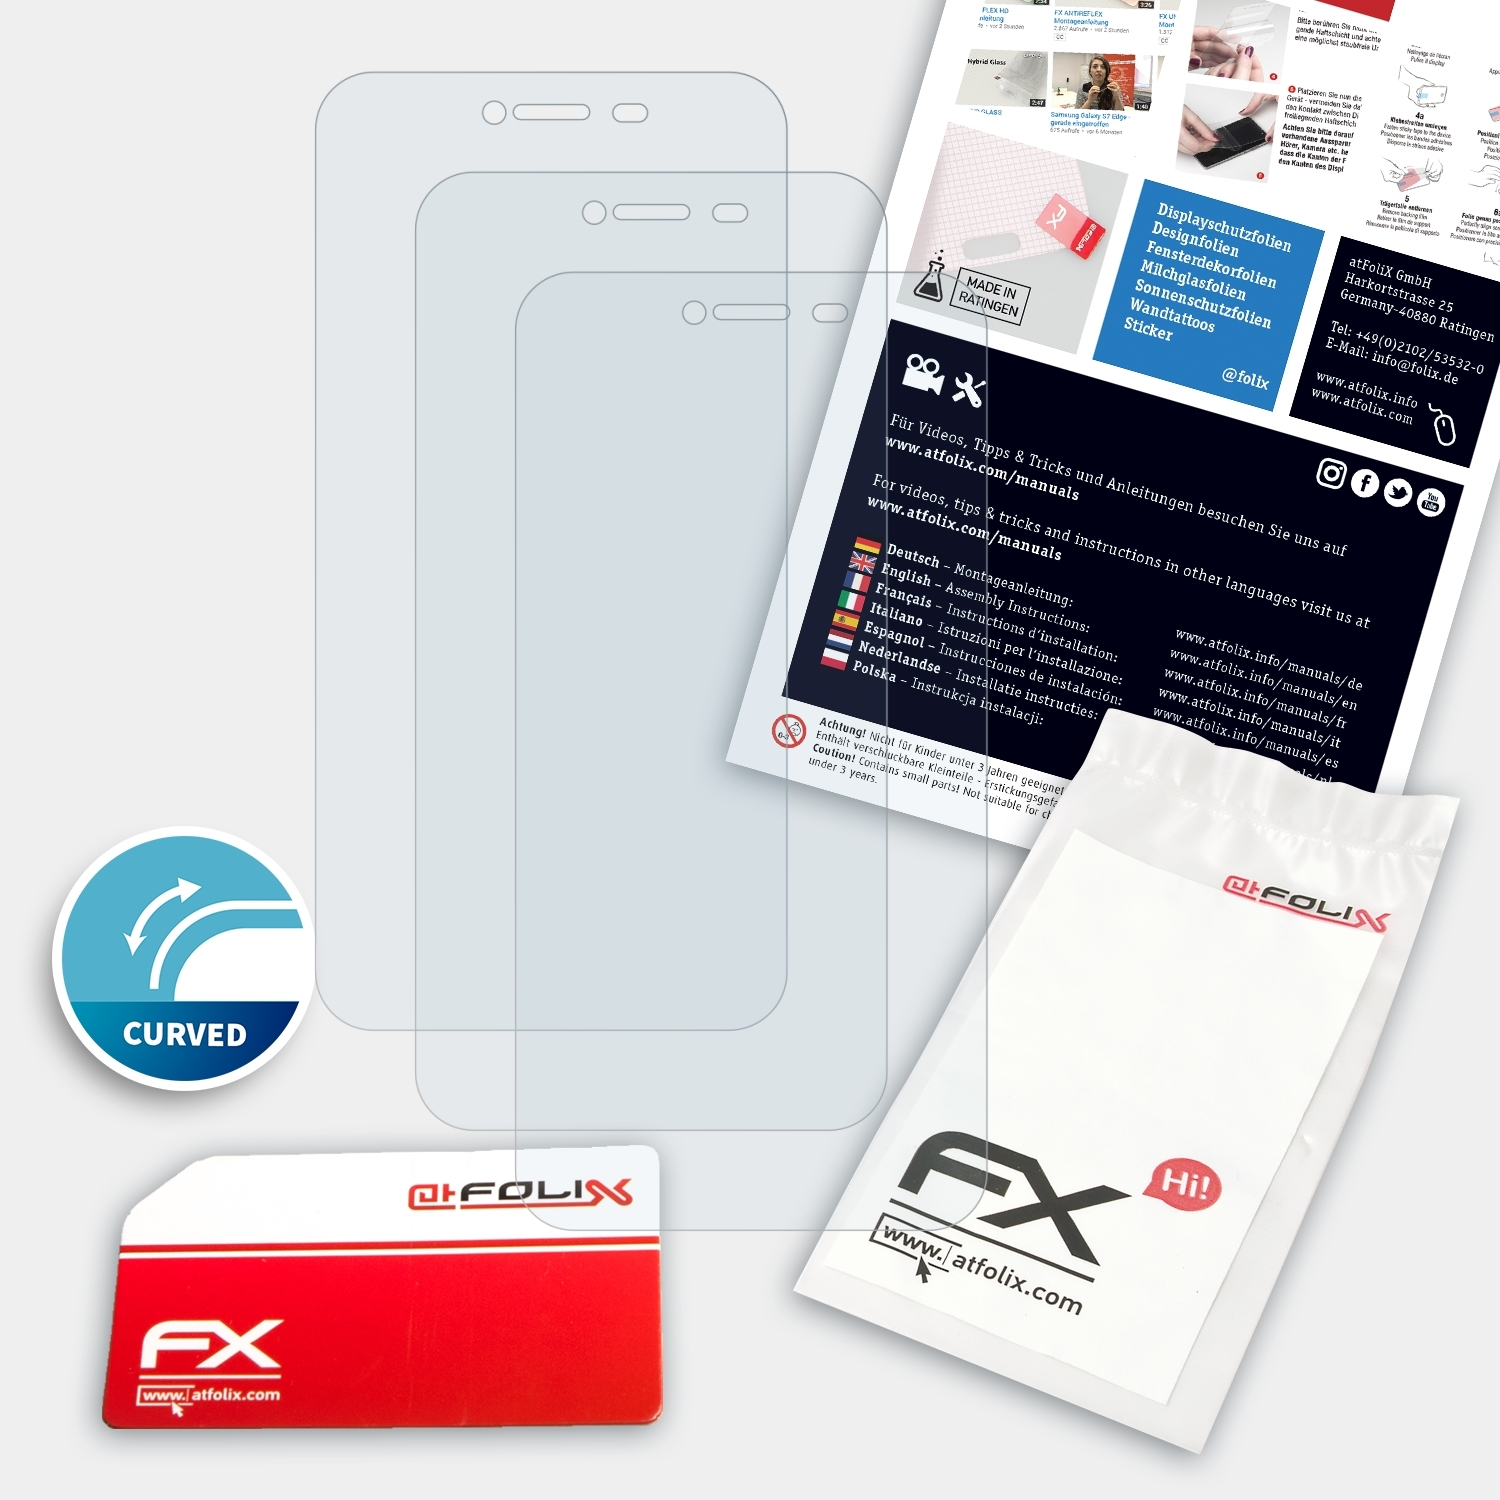 ATFOLIX 3x FX-ActiFleX (MD60746)) LIFE Medion E5008 Displayschutz(für